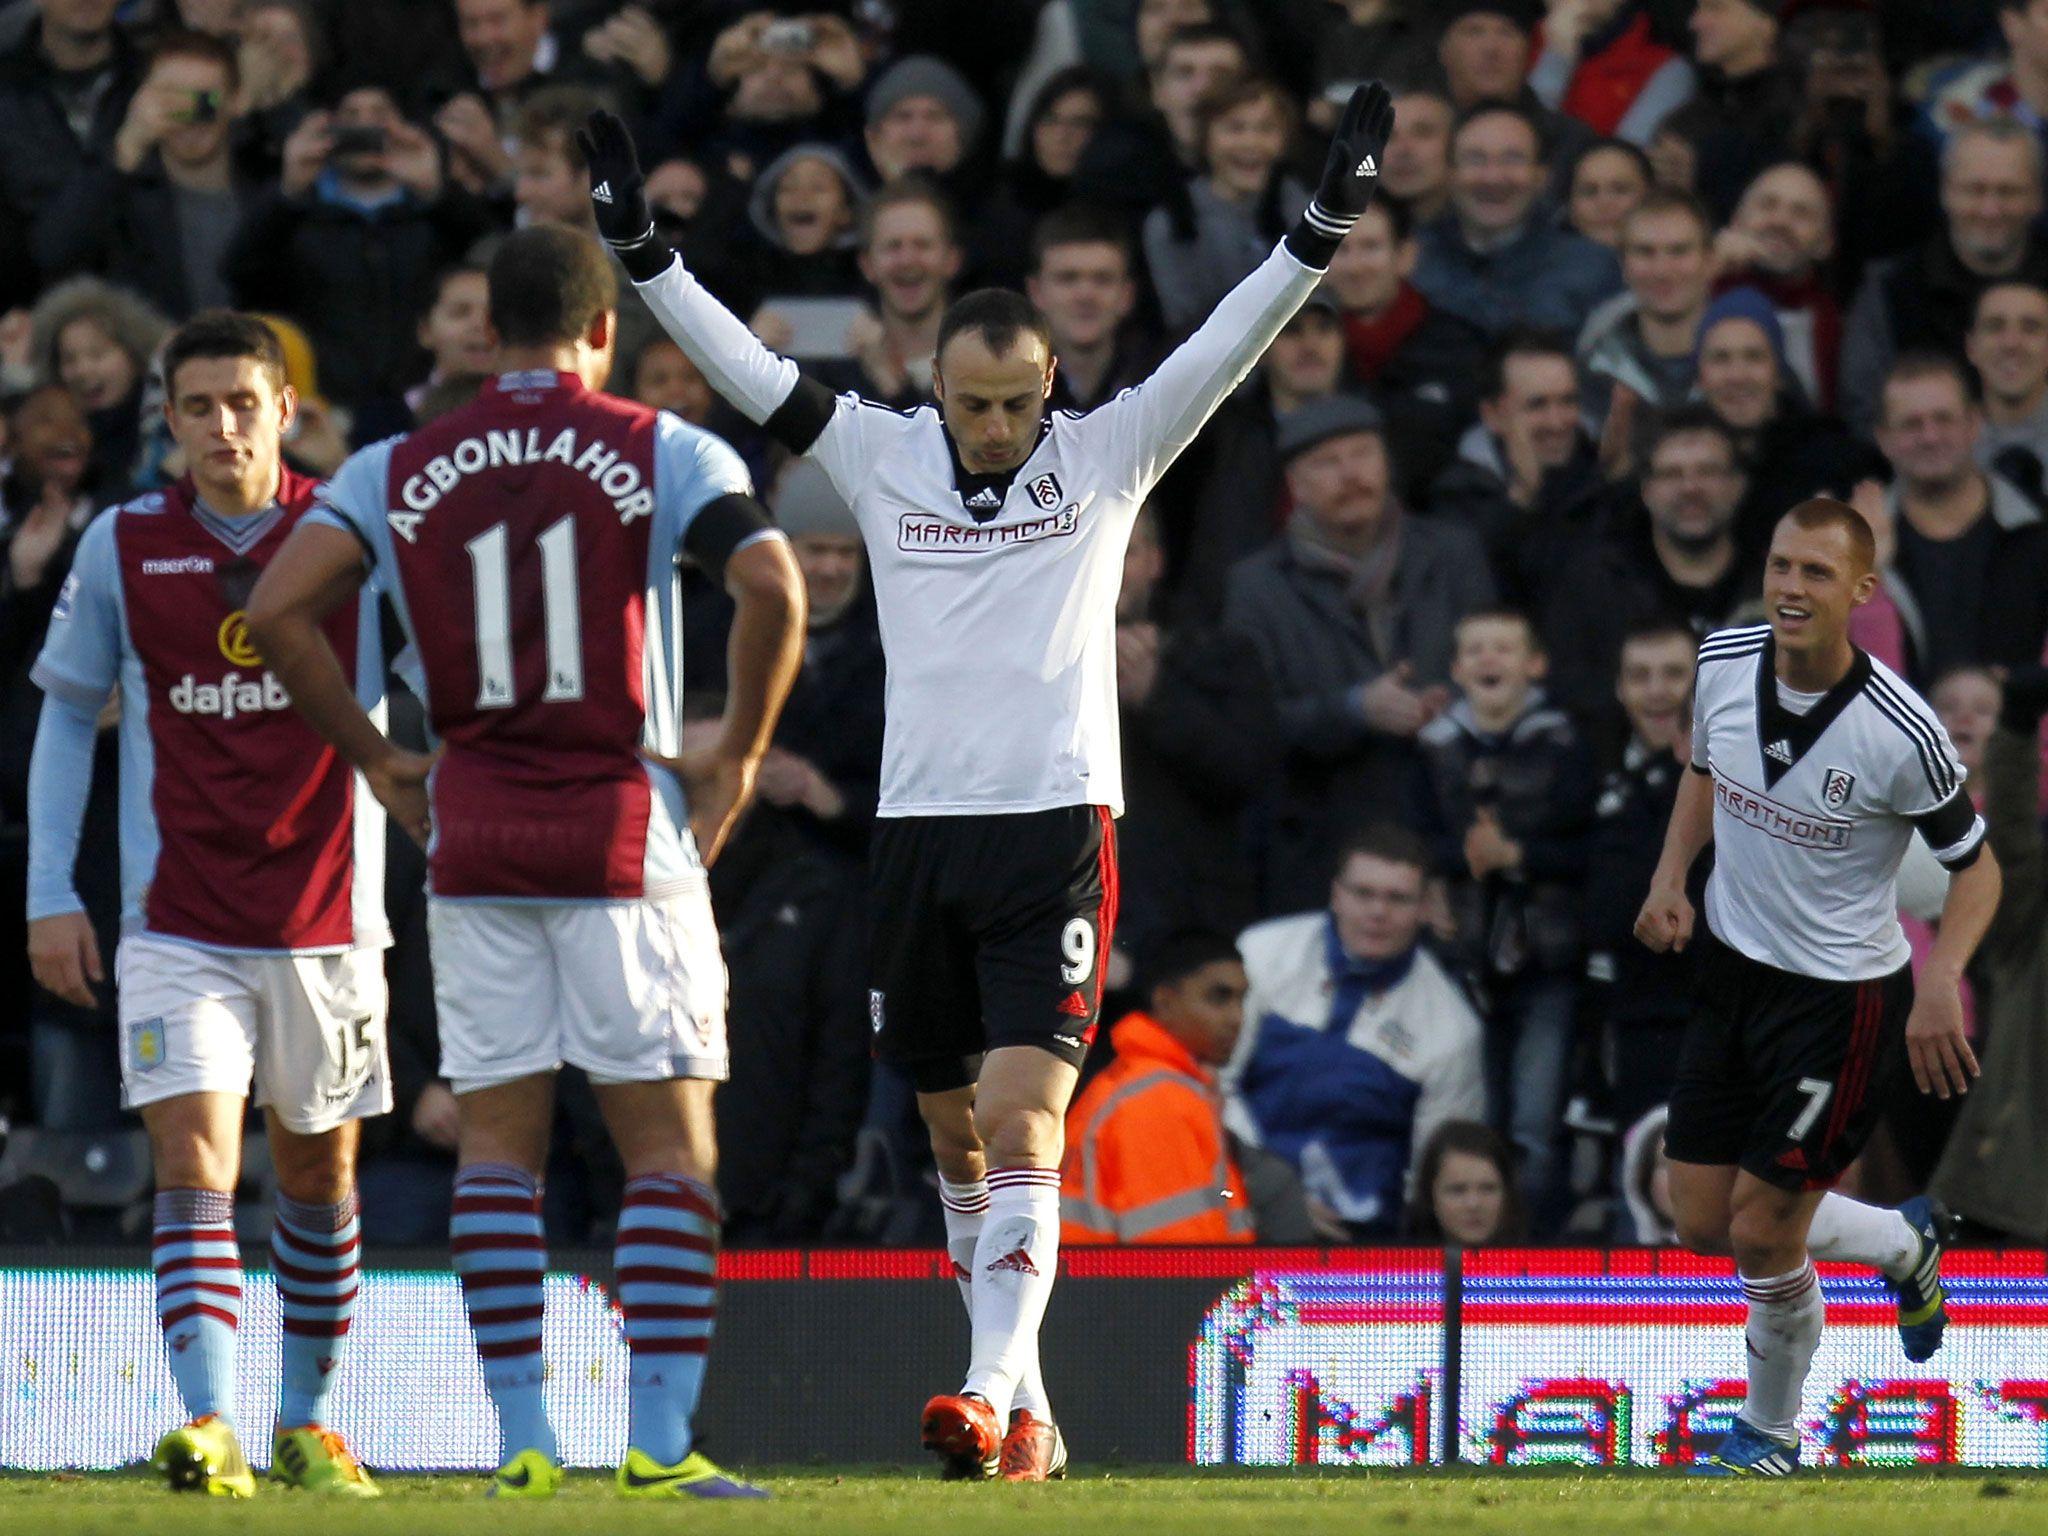 Fulham 2 Aston Villa 0: Dimitar Berbatov has full backing